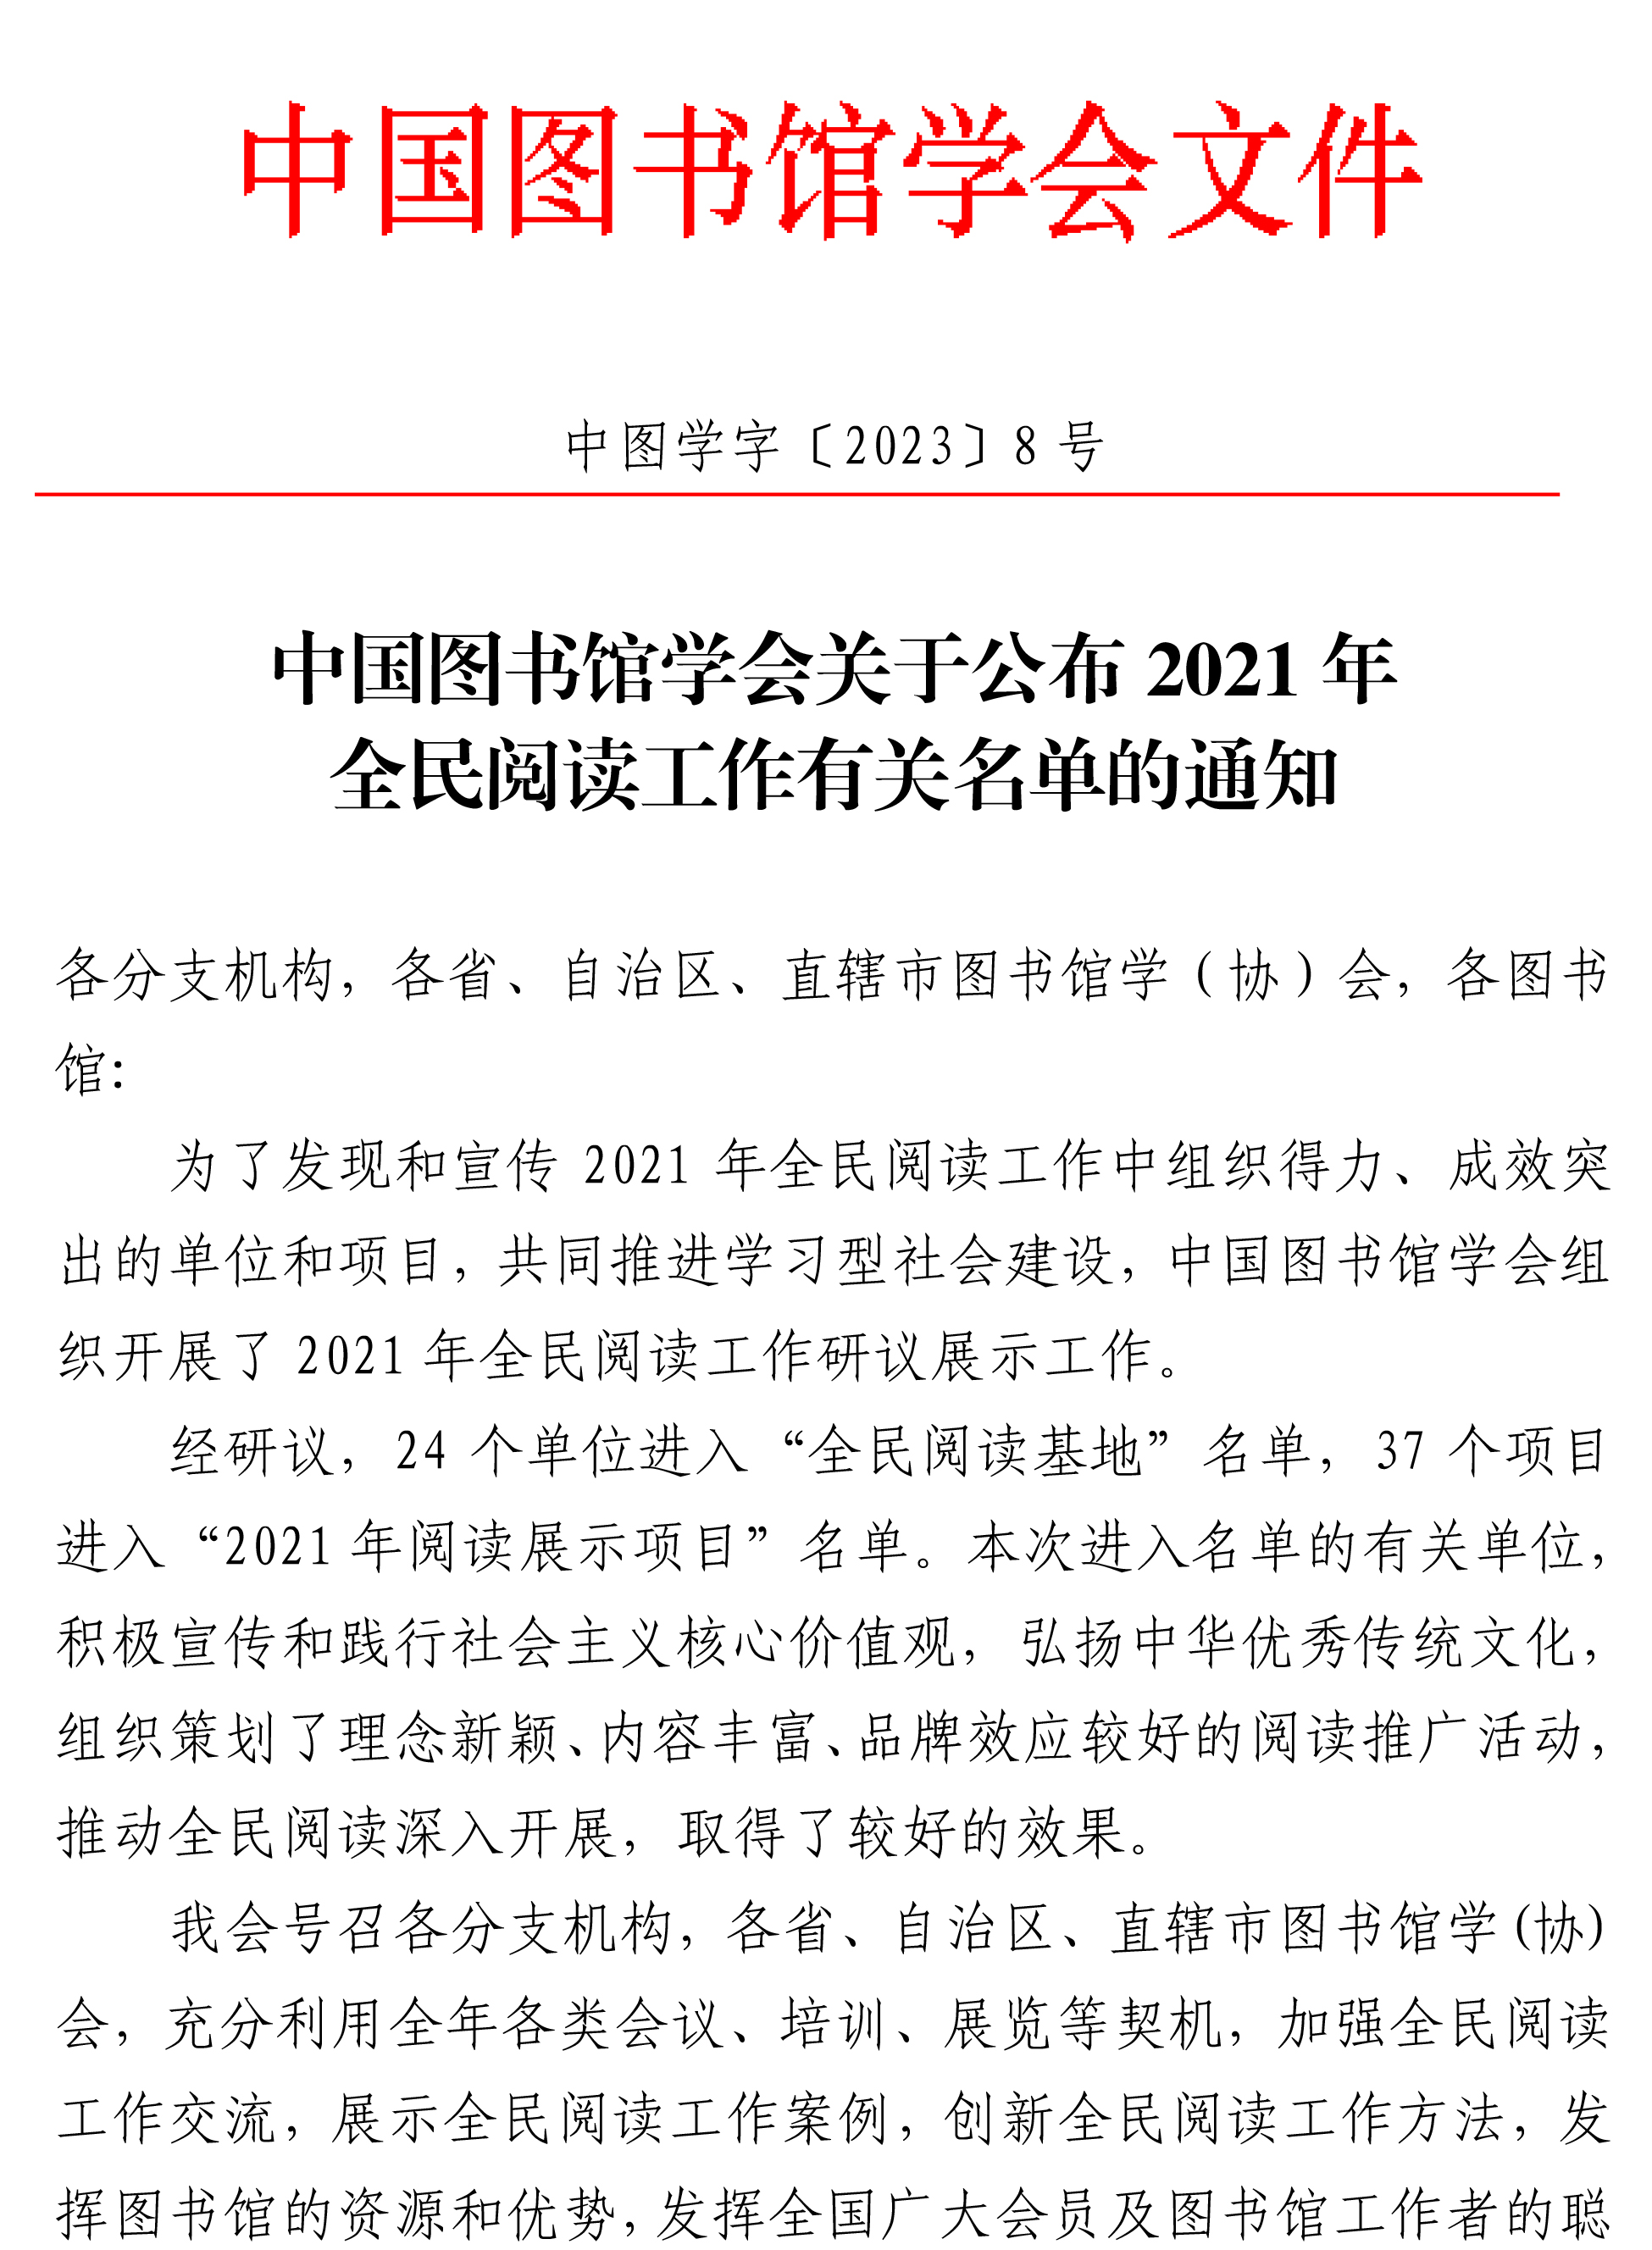 中国图书馆学会关于公布2021年全民阅读工作有关名单的通知-1